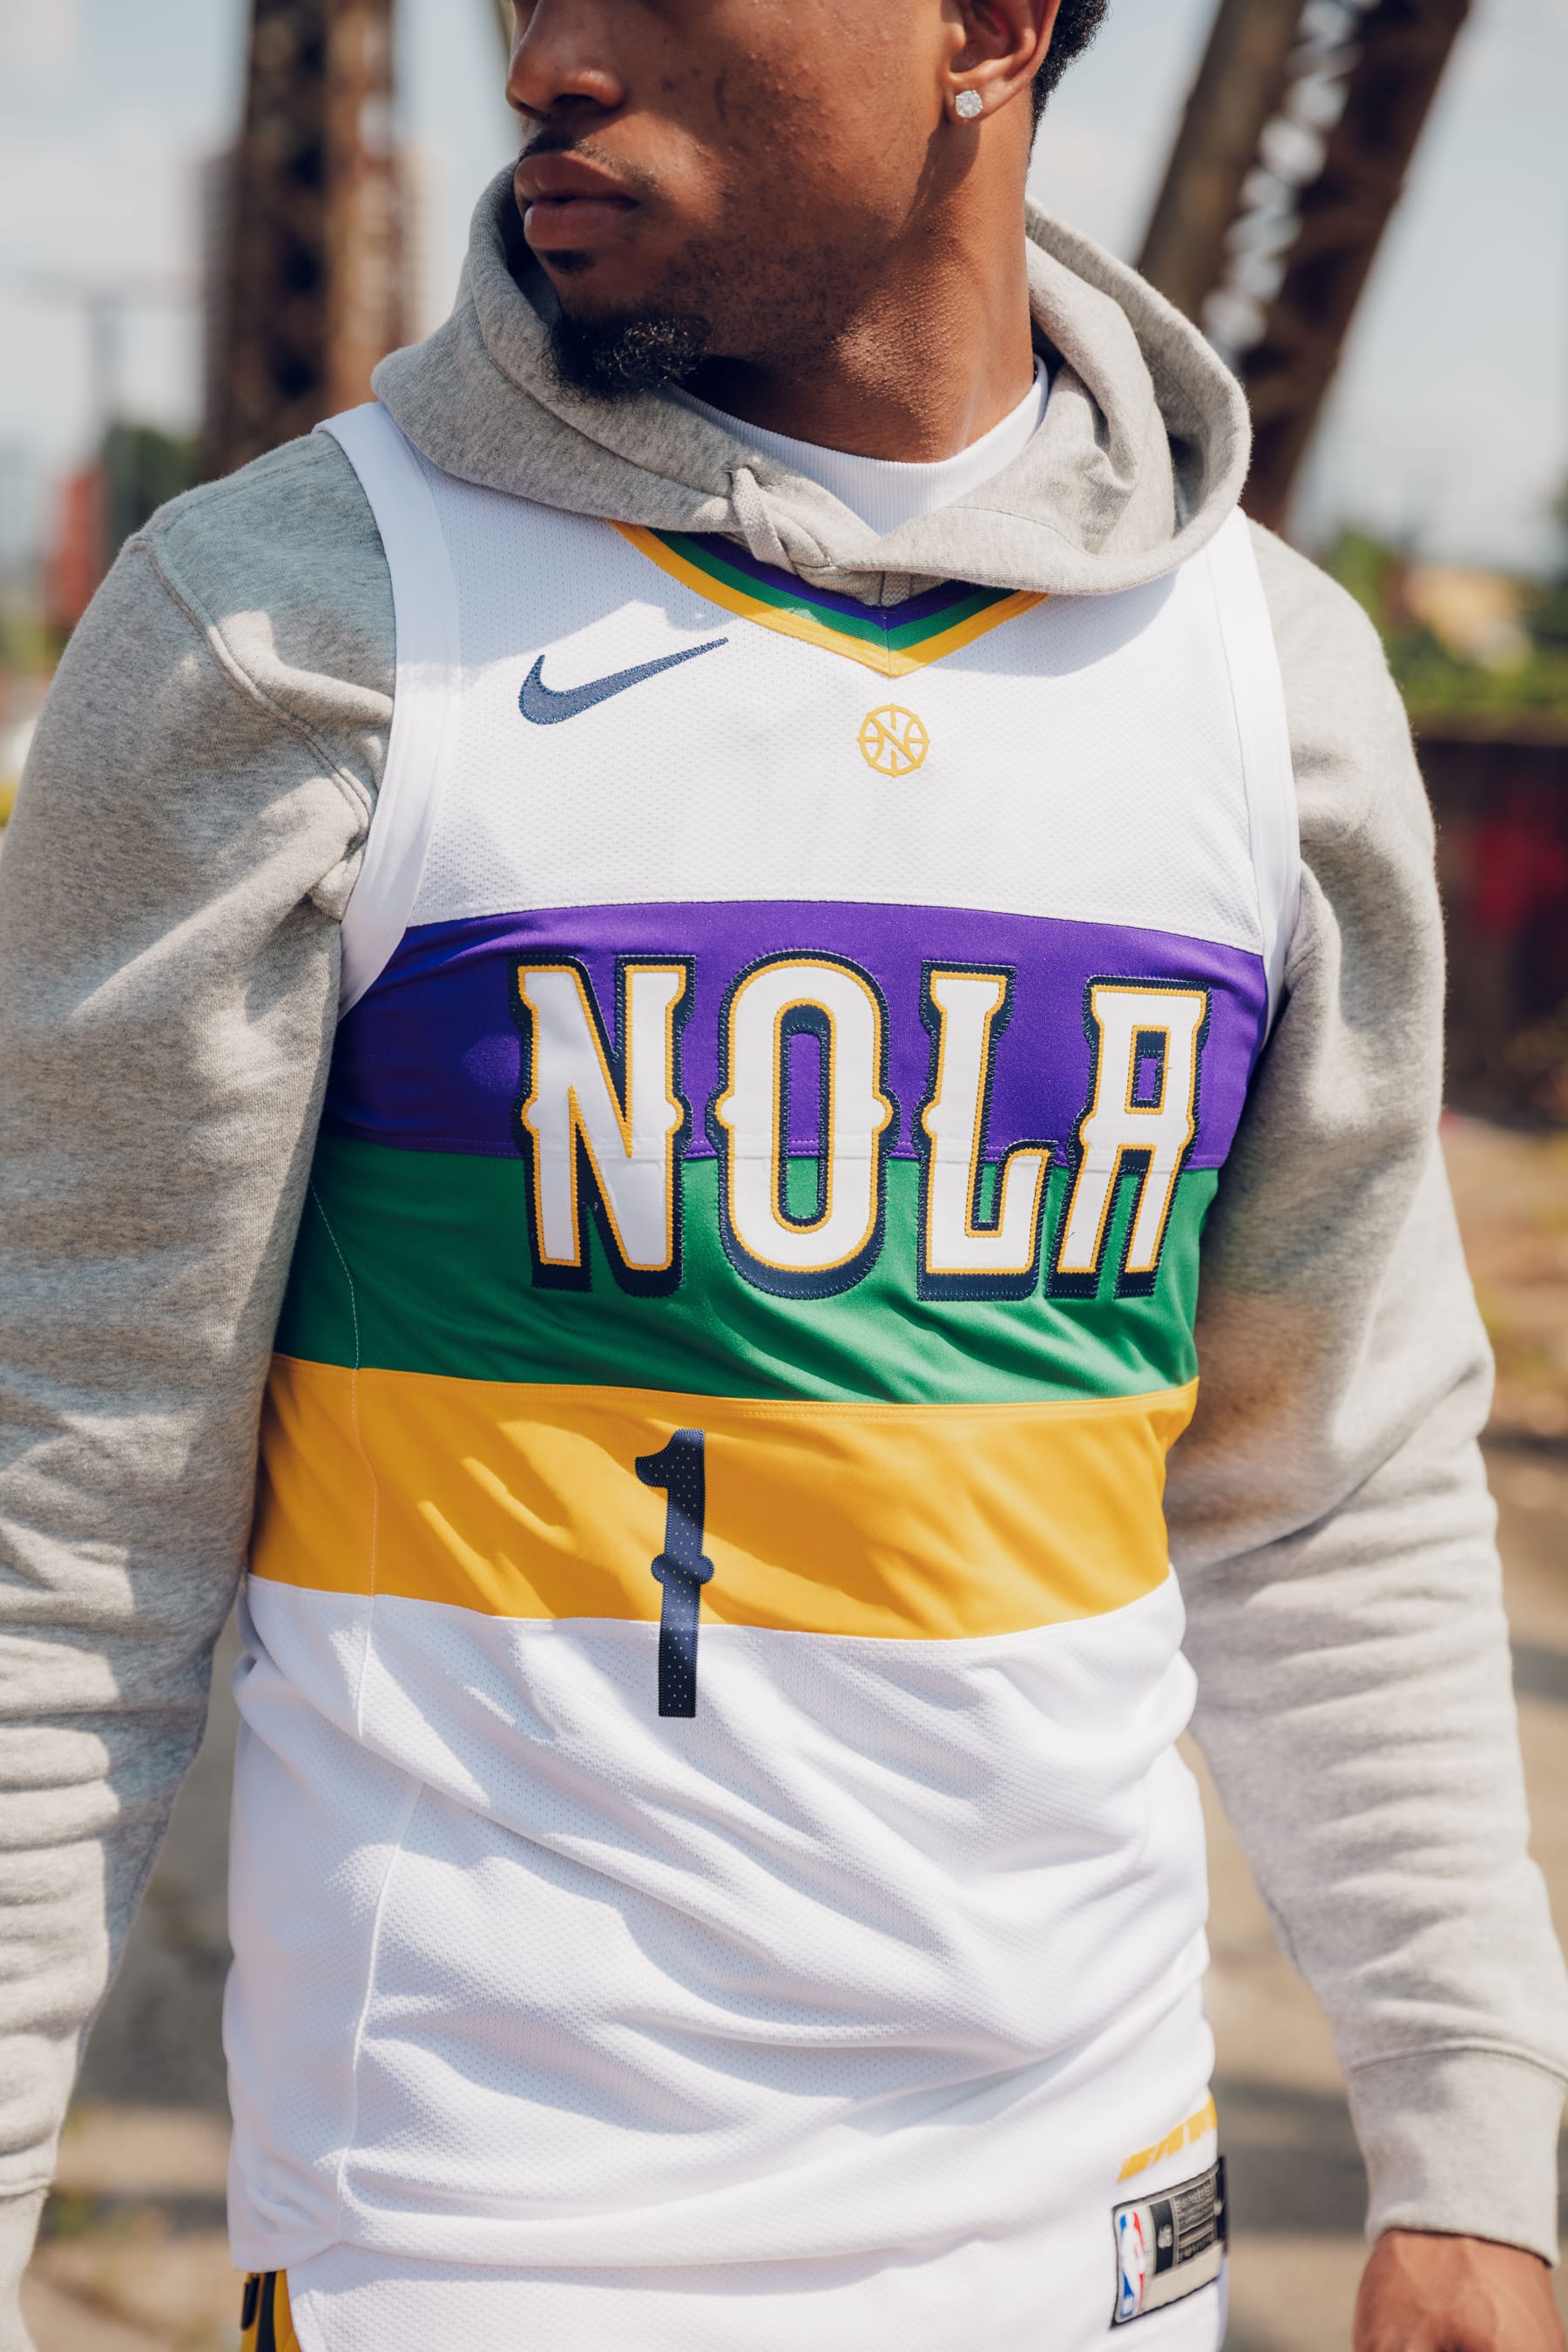 nola city edition jersey